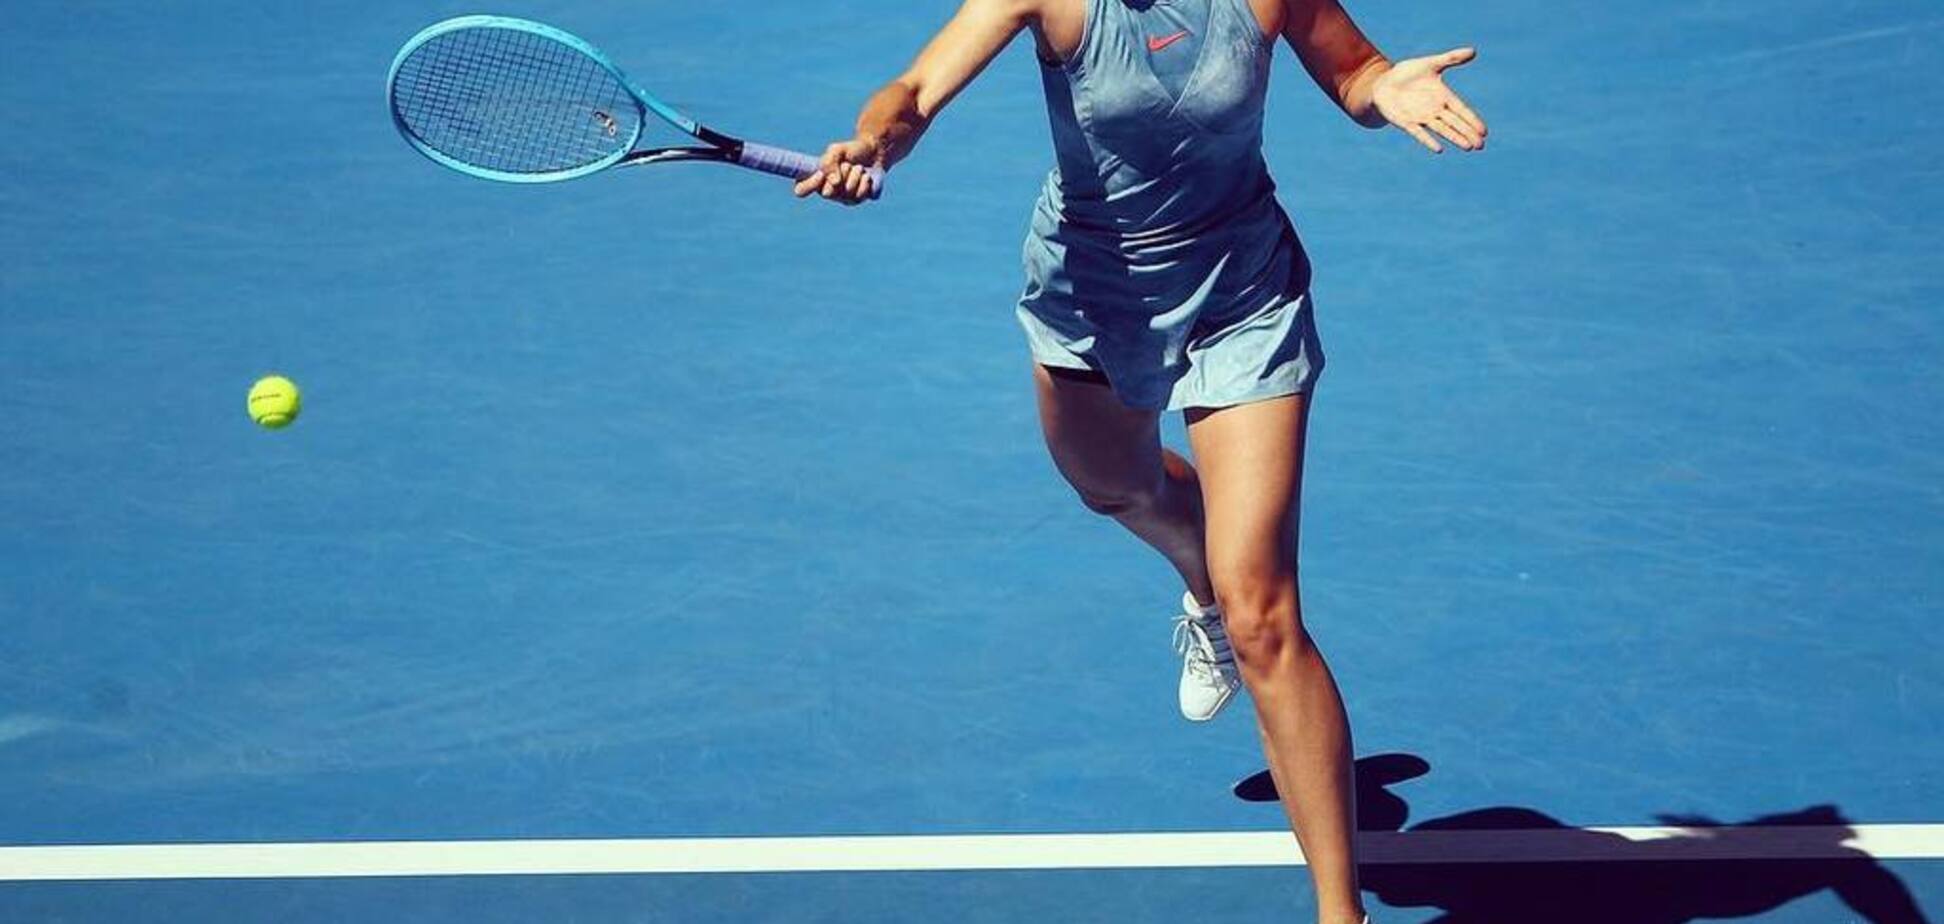 Шарапова угодила в эпичный курьез на Australian Open: момент попал на видео